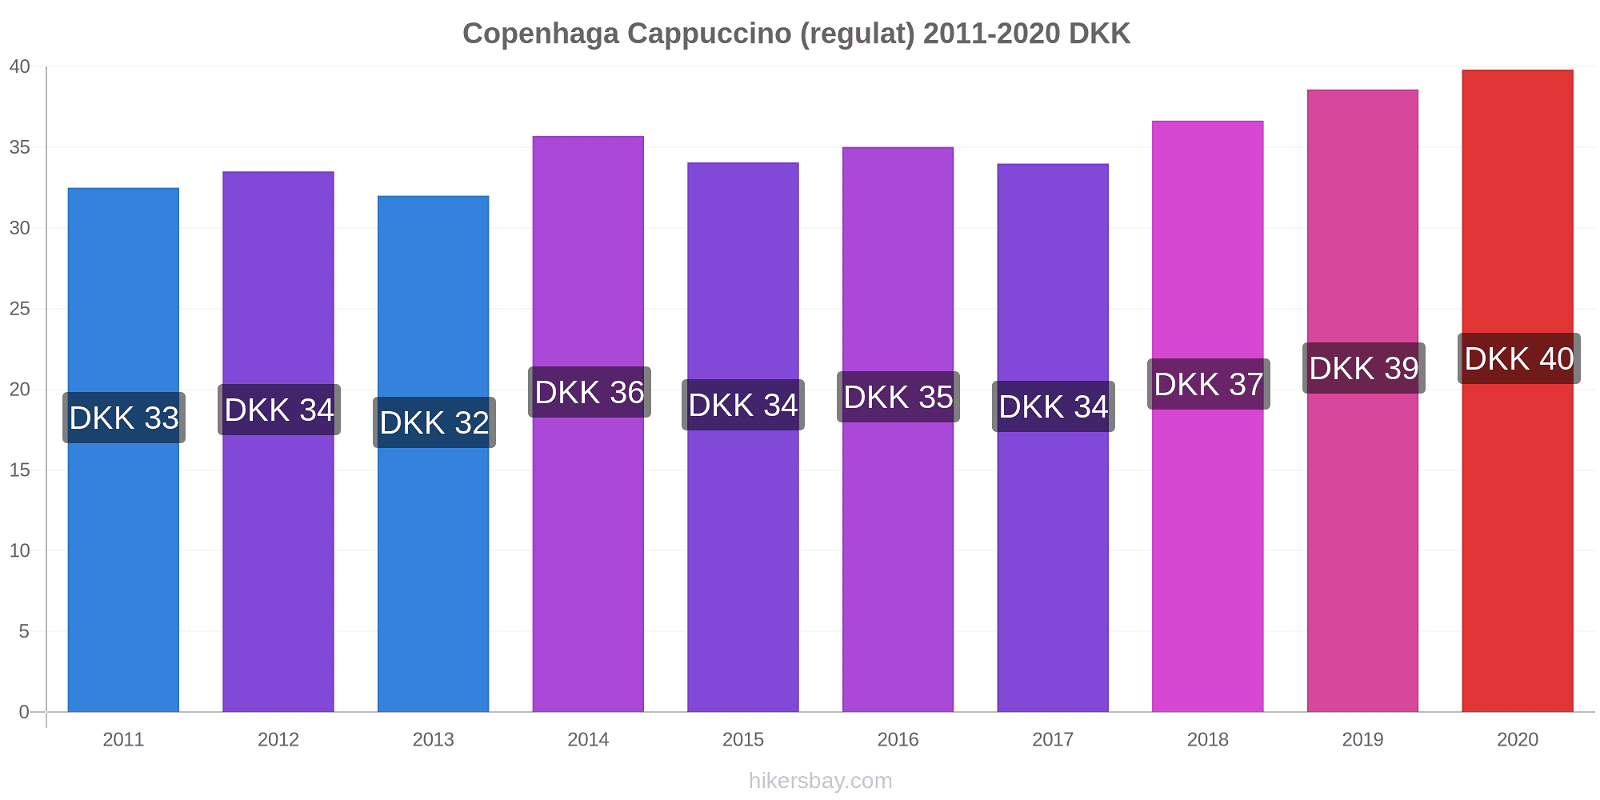 Copenhaga modificări de preț Cappuccino (regulat) hikersbay.com